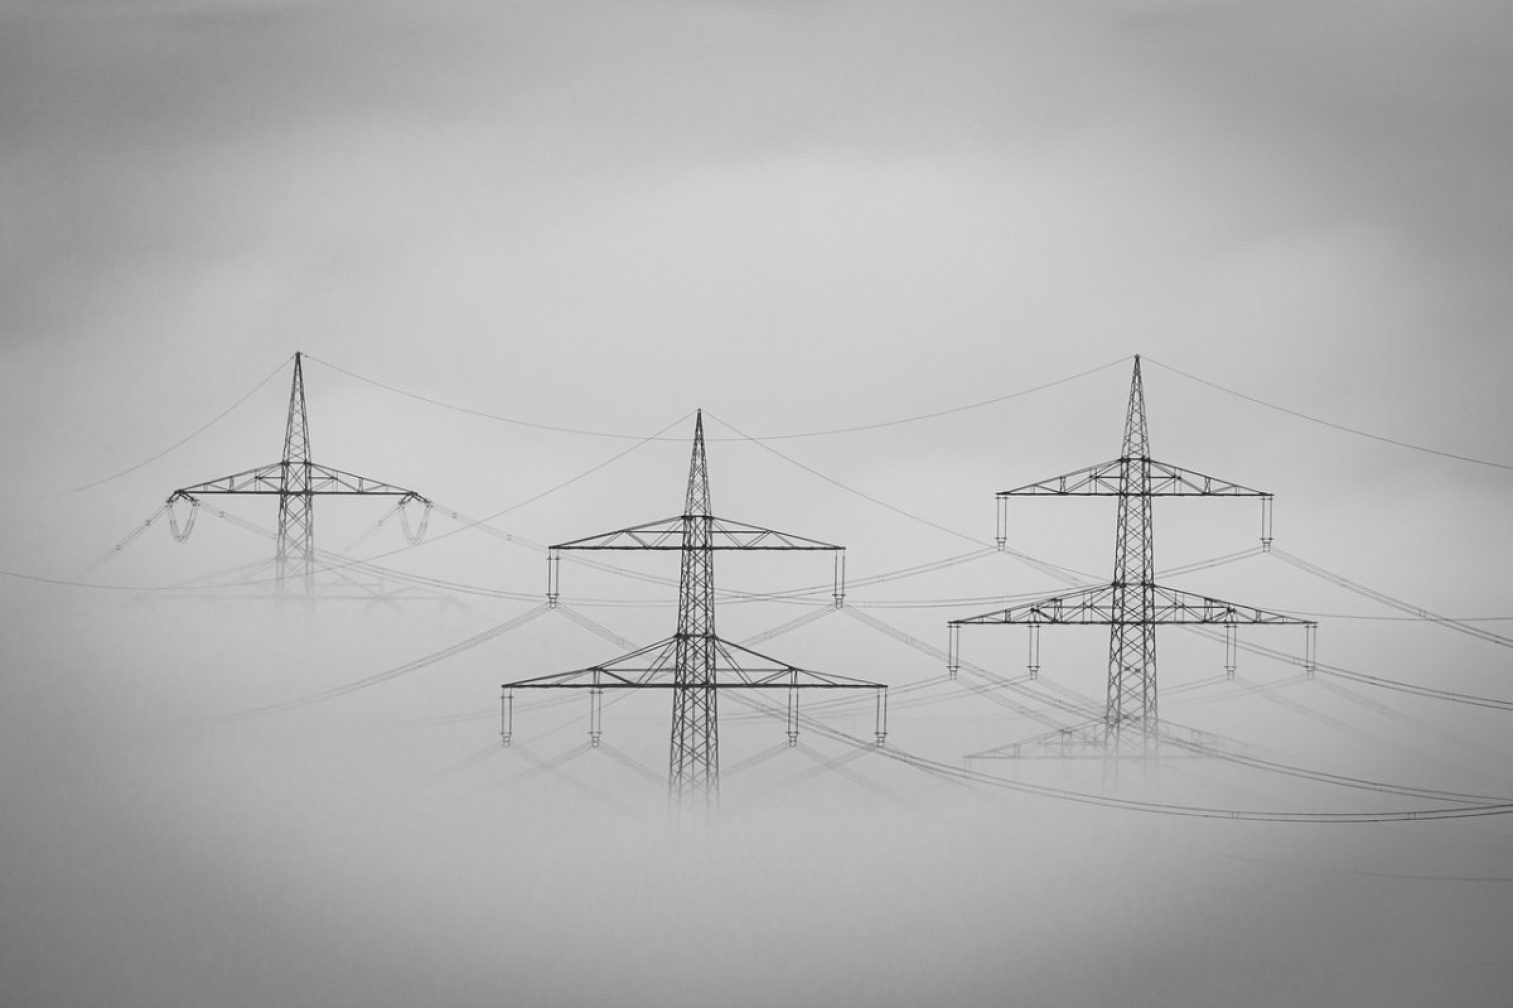 fog, landscape, electricity